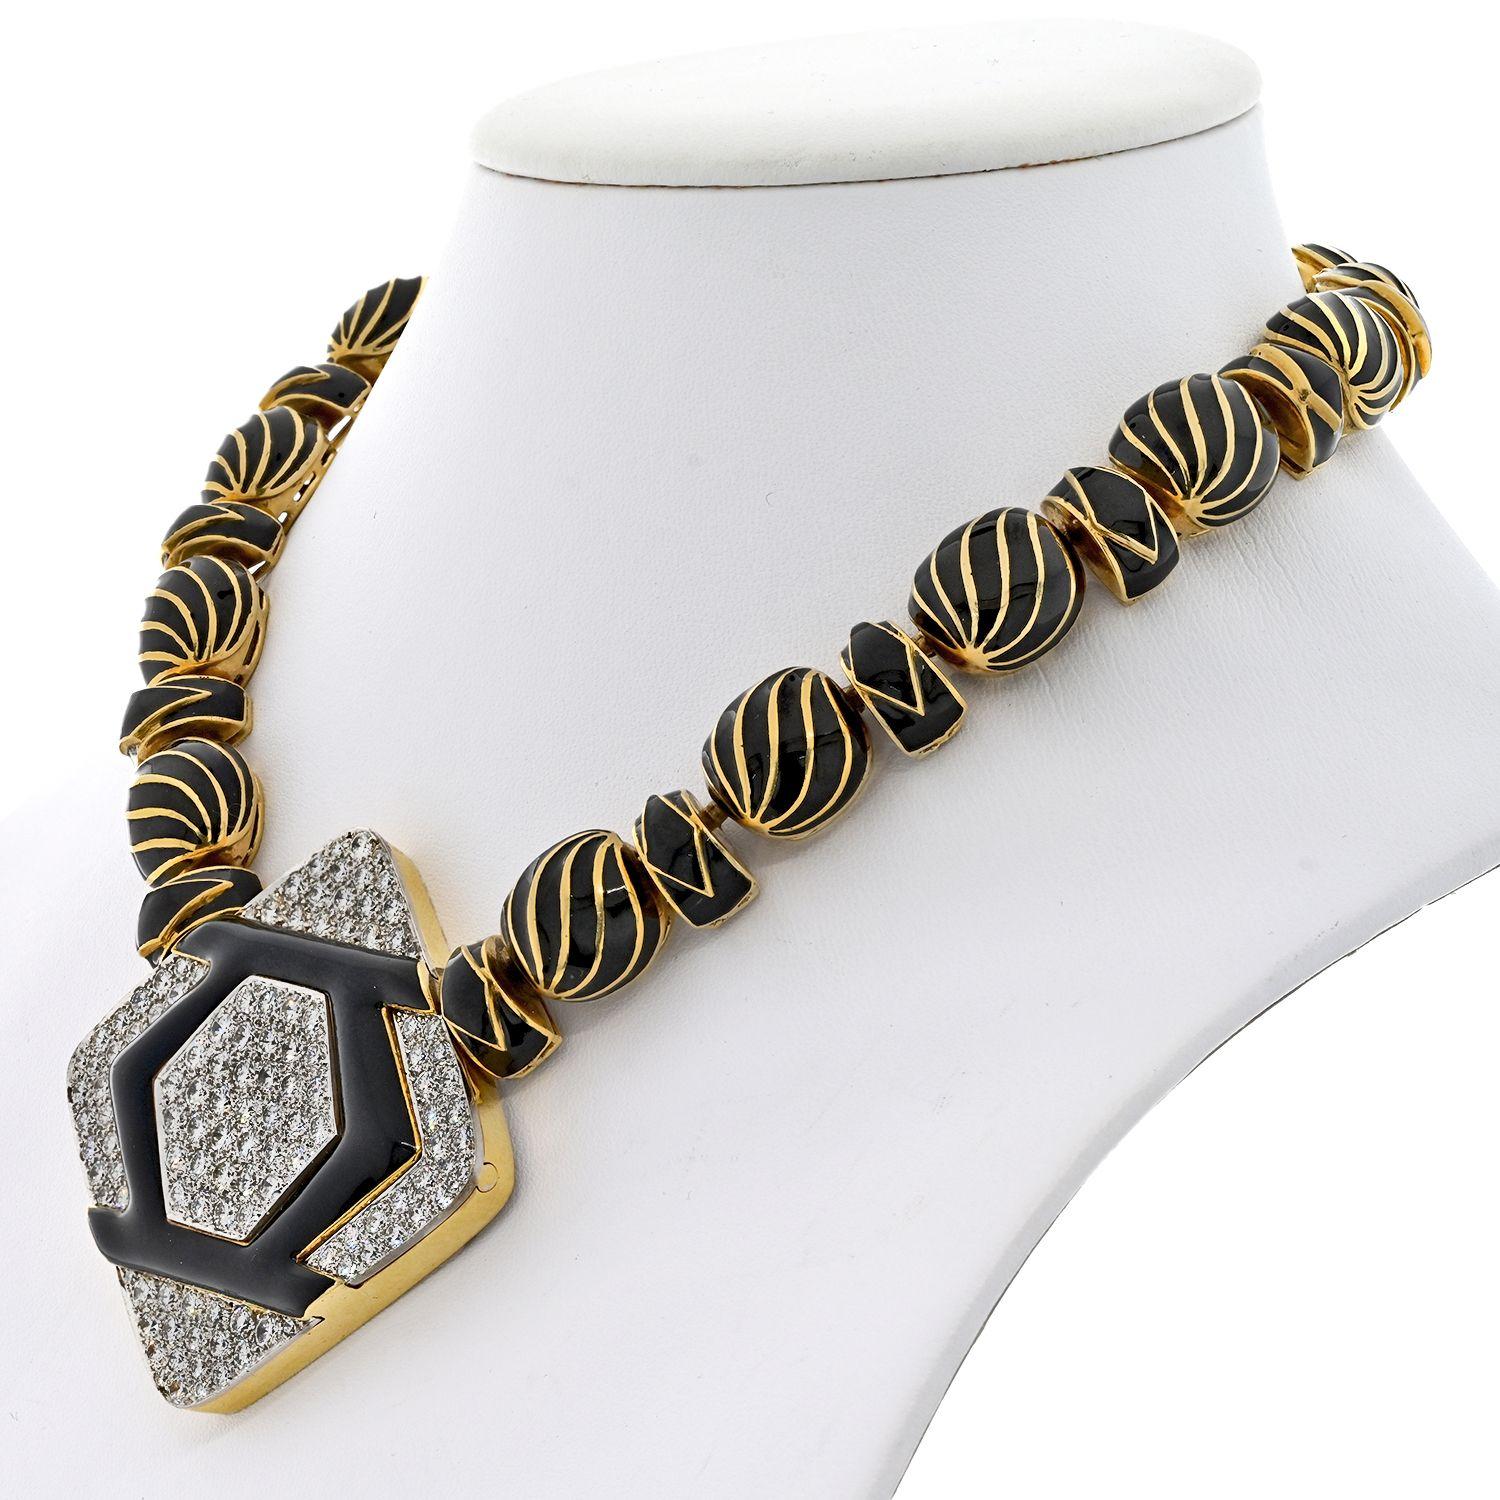 Wir präsentieren eine bezaubernde Halskette aus dem Nachlass des renommierten Designers David Webb. Als Teil der geschätzten Manhattan Minimalism Collection stellt dieses exquisite Stück die perfekte Mischung aus Eleganz und Modernität dar. Das